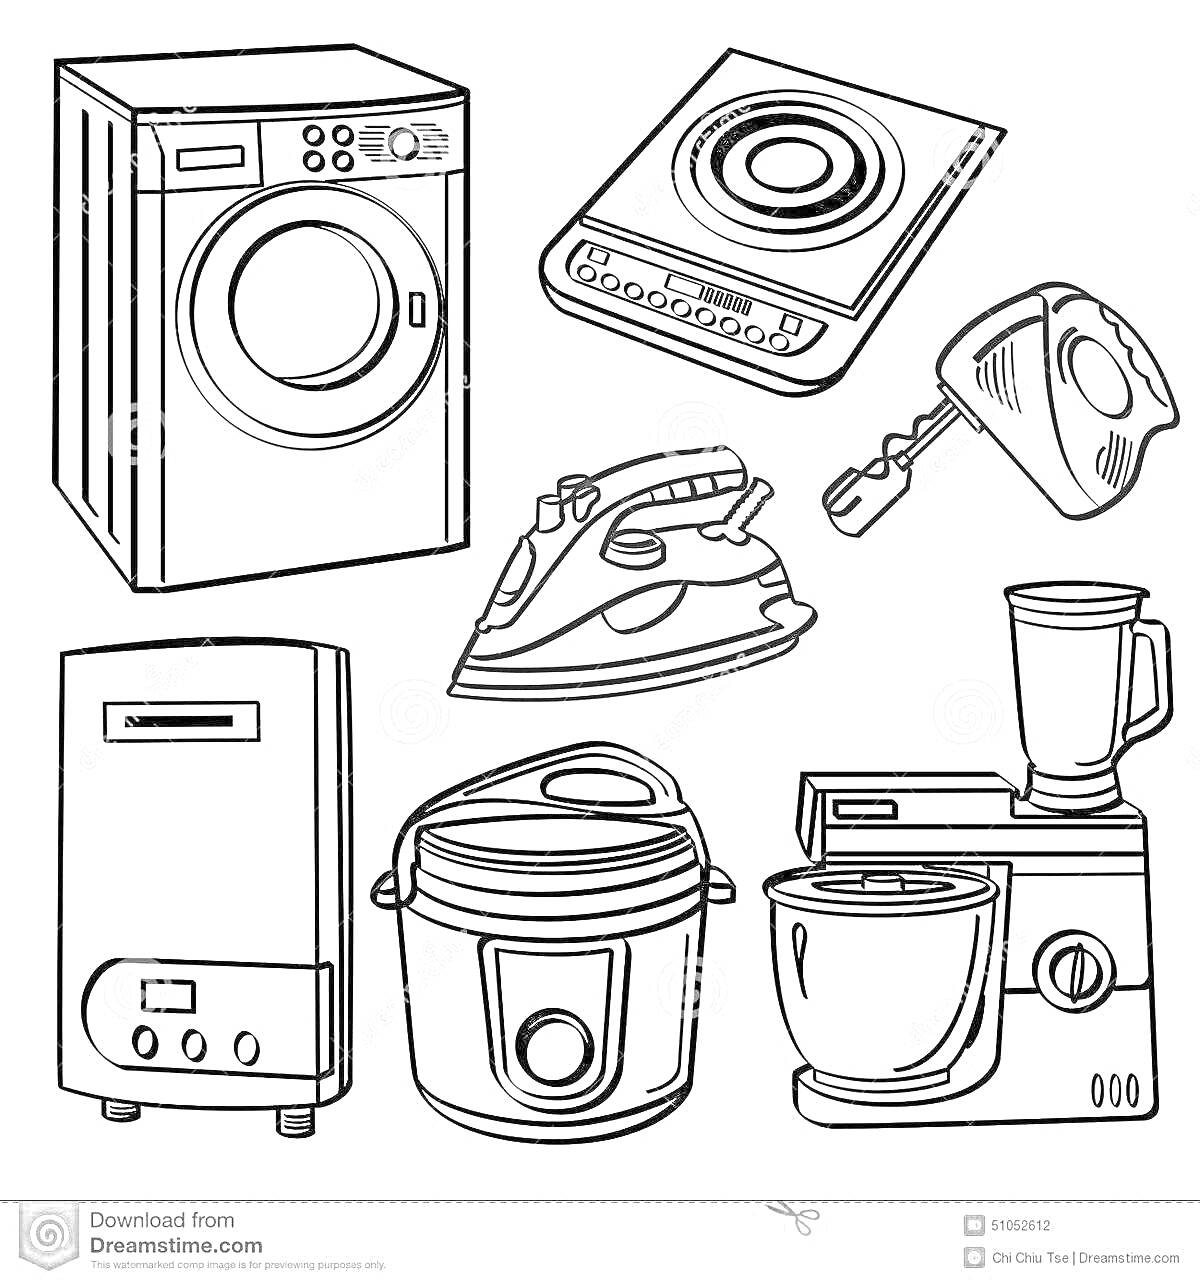 Раскраска стиральная машина, плита, утюг, чайник, посудомоечная машина, мультиварка, кухонный комбайн